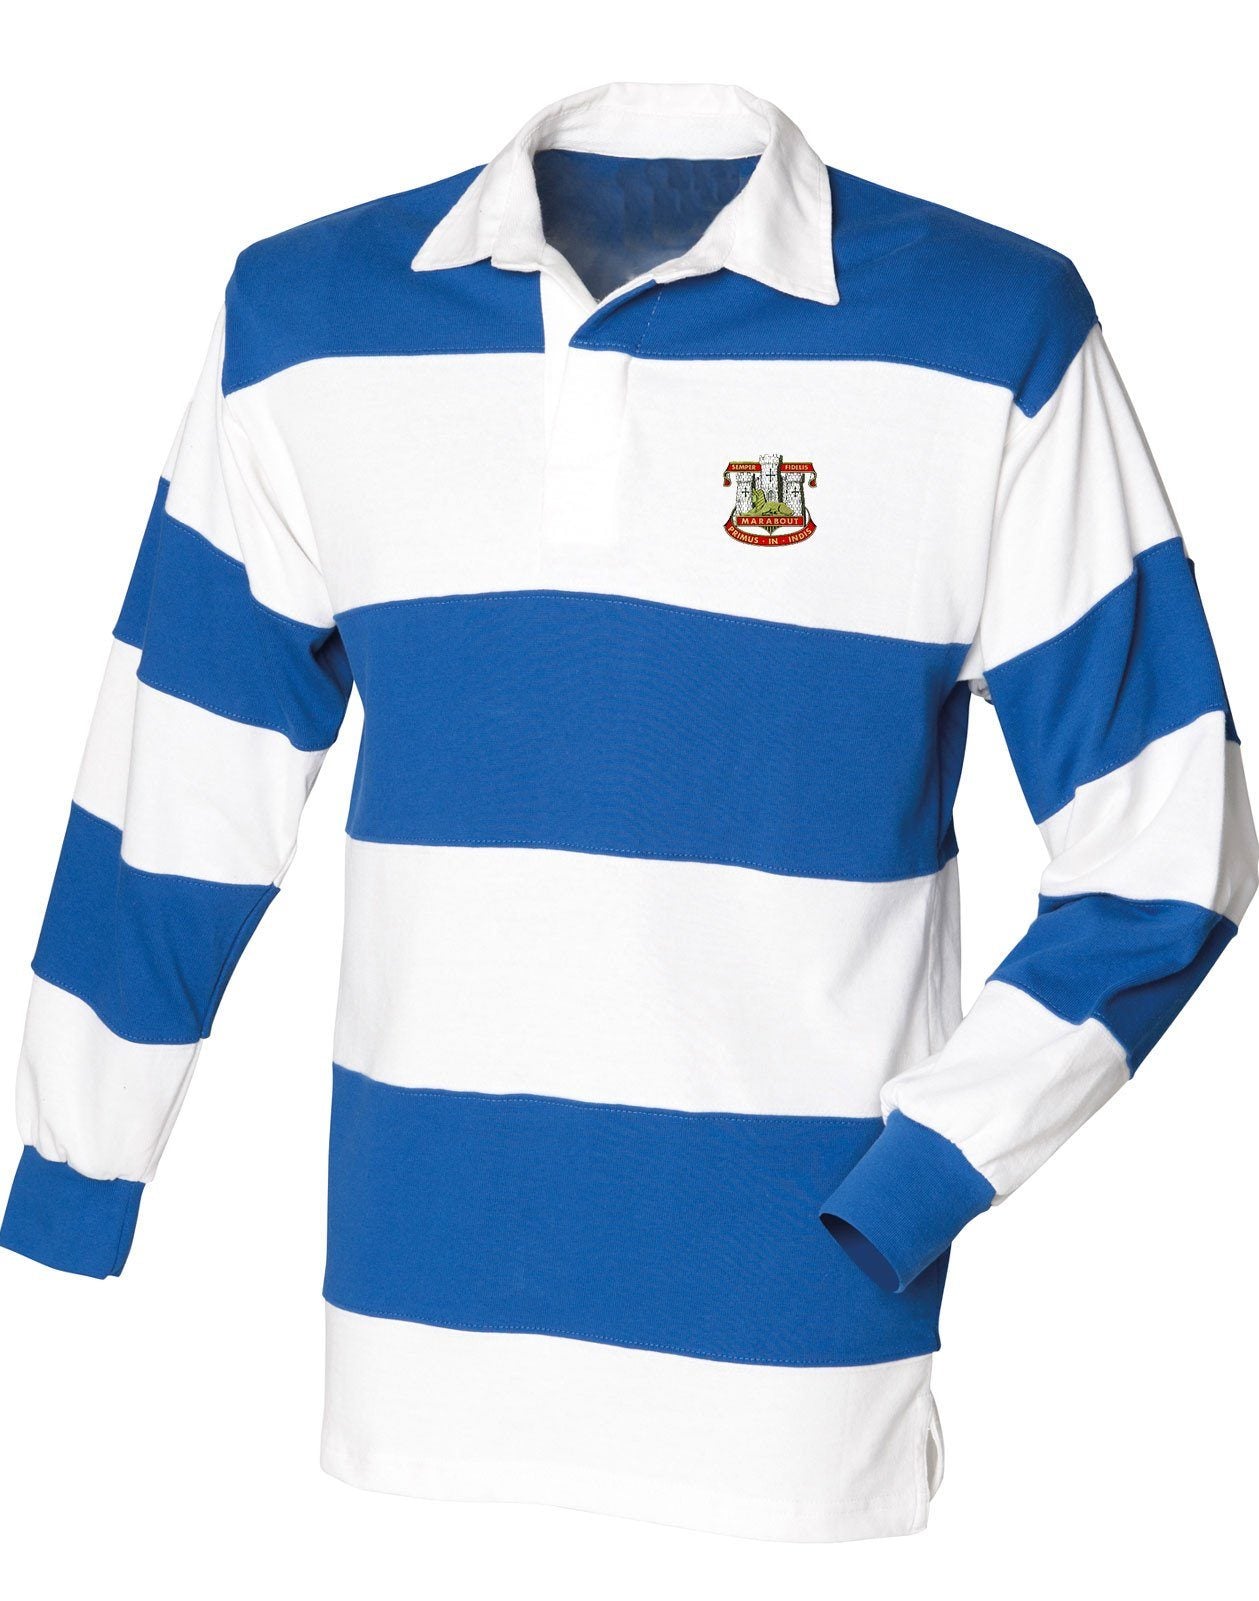 Devonshire and Dorset Regimental Rugby Shirt – The Regimental Shop